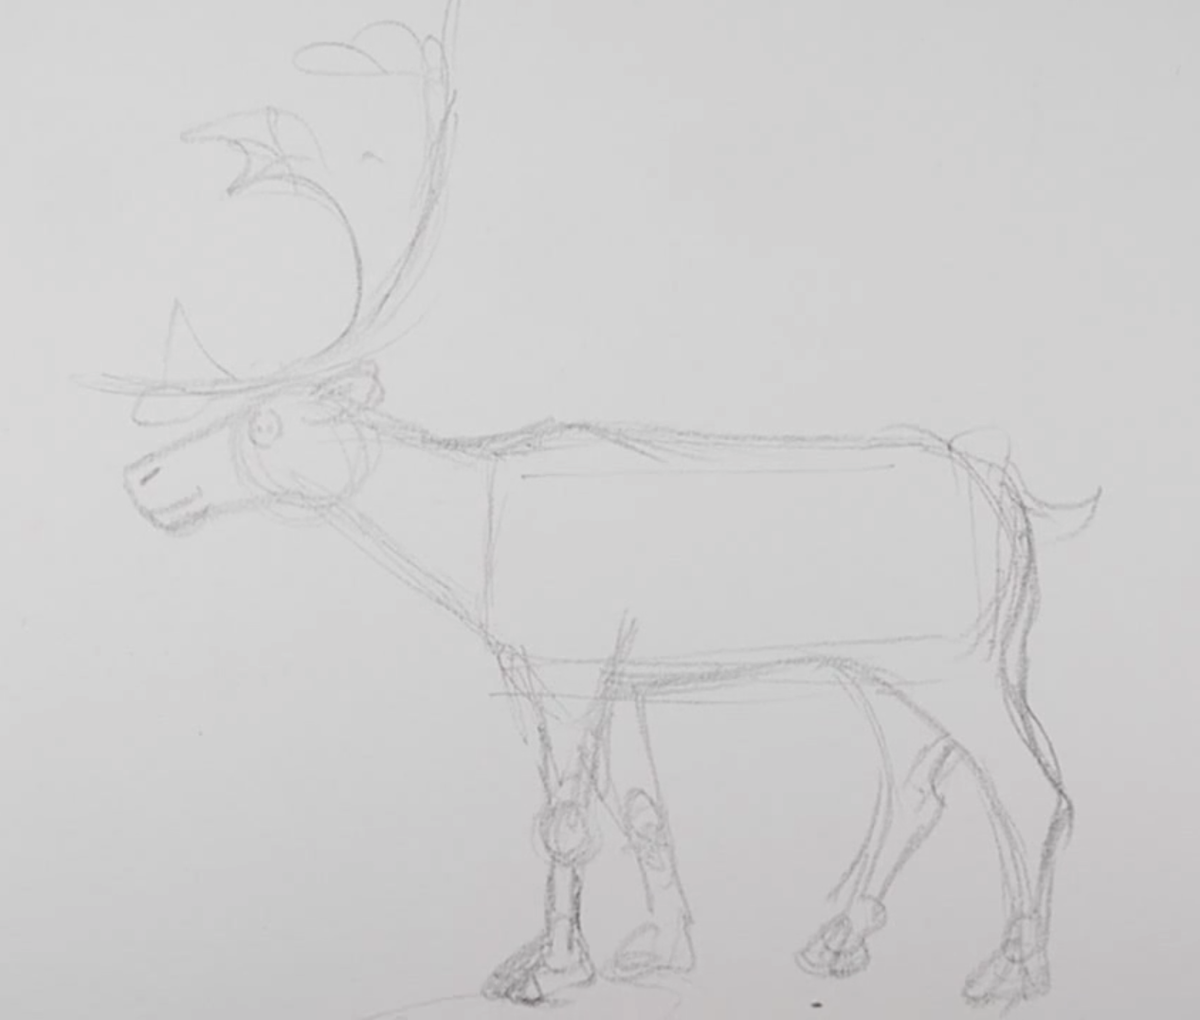 Как нарисовать оленя карандашами поэтапно — мастер-класс для детей. фото и описание всех этапов рисования!